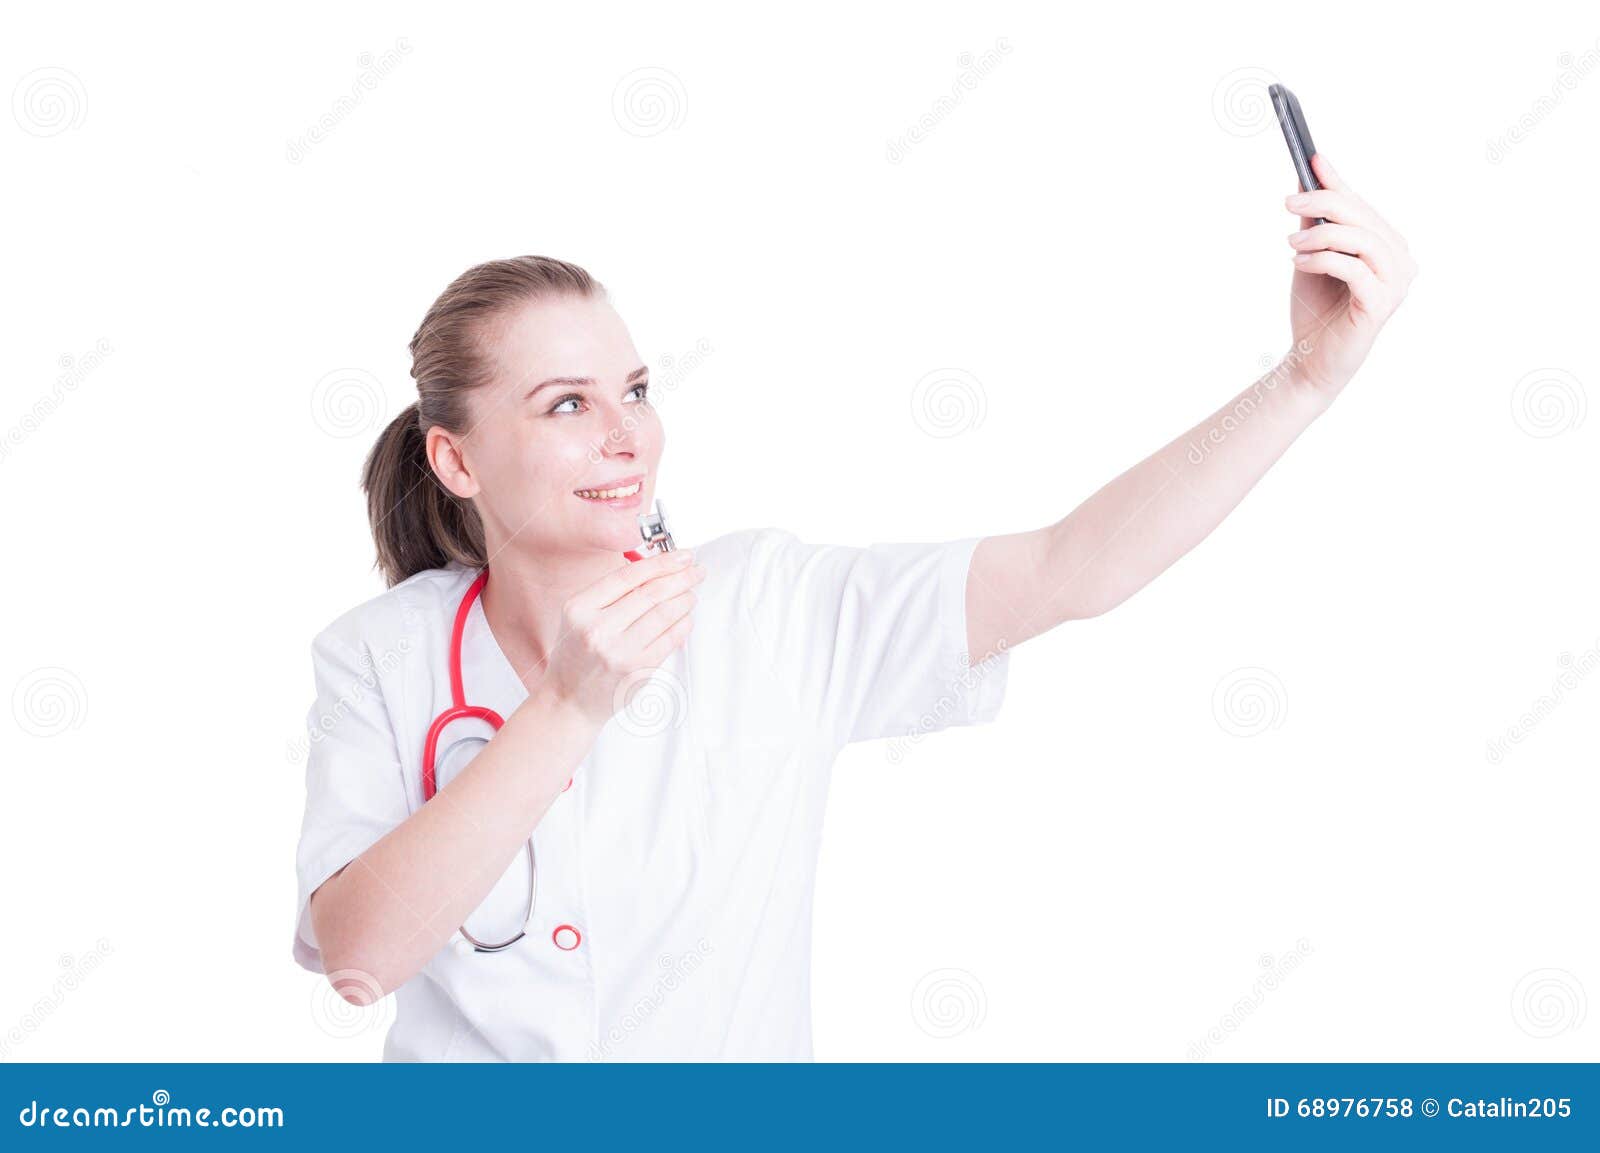 Schönheitsdoktor, der ein selfie unter Verwendung des Telefons nimmt. Schönheitsdoktor, der ein selfie unter Verwendung der Telefonkamera nimmt und Stethoskop zeigt